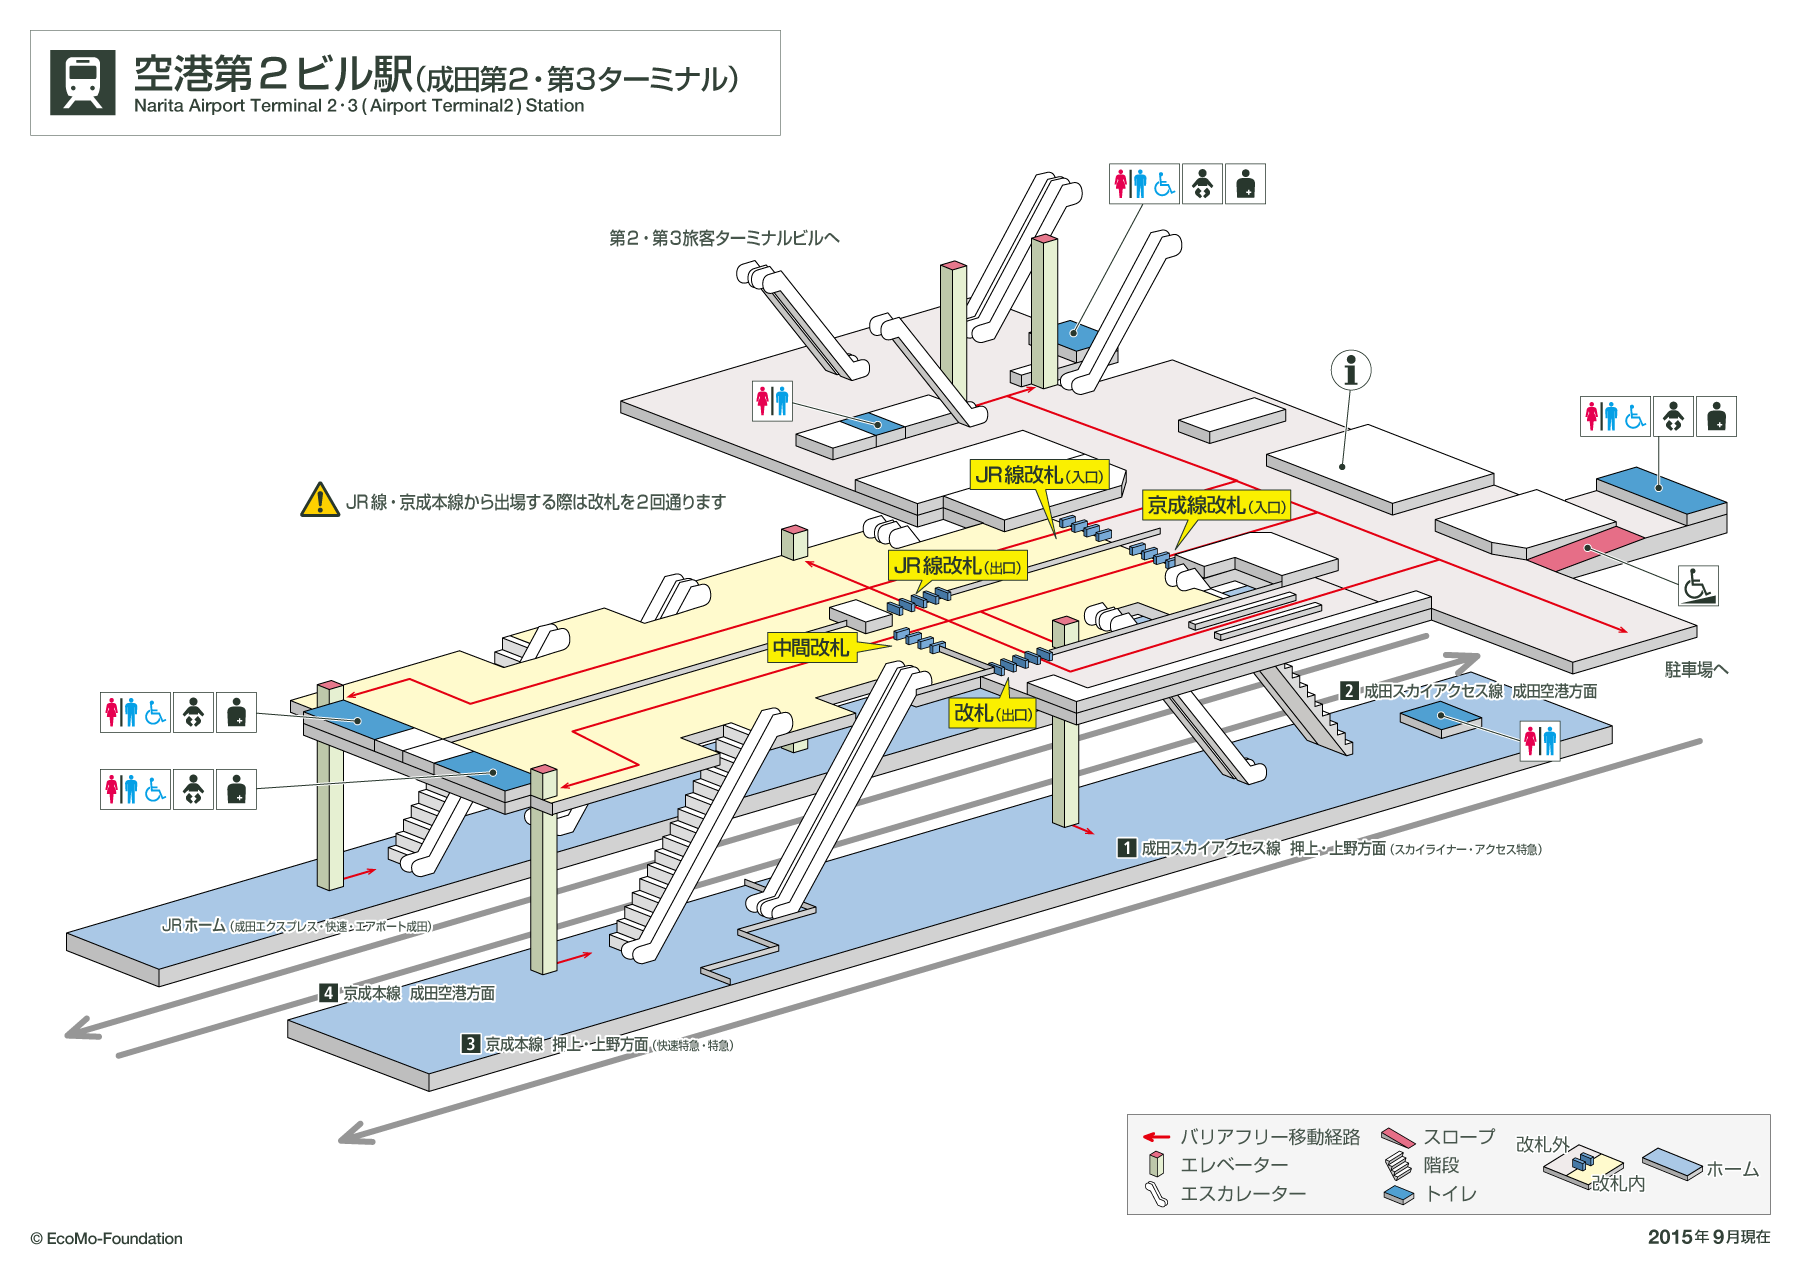 [{'s_sta_name': '空港第２ビル', 's_r_sta_name': 'Narita Airport Terminal 2/3', 'encode_sta_name': '%E7%A9%BA%E6%B8%AF%E7%AC%AC%EF%BC%92%E3%83%93%E3%83%AB'}]